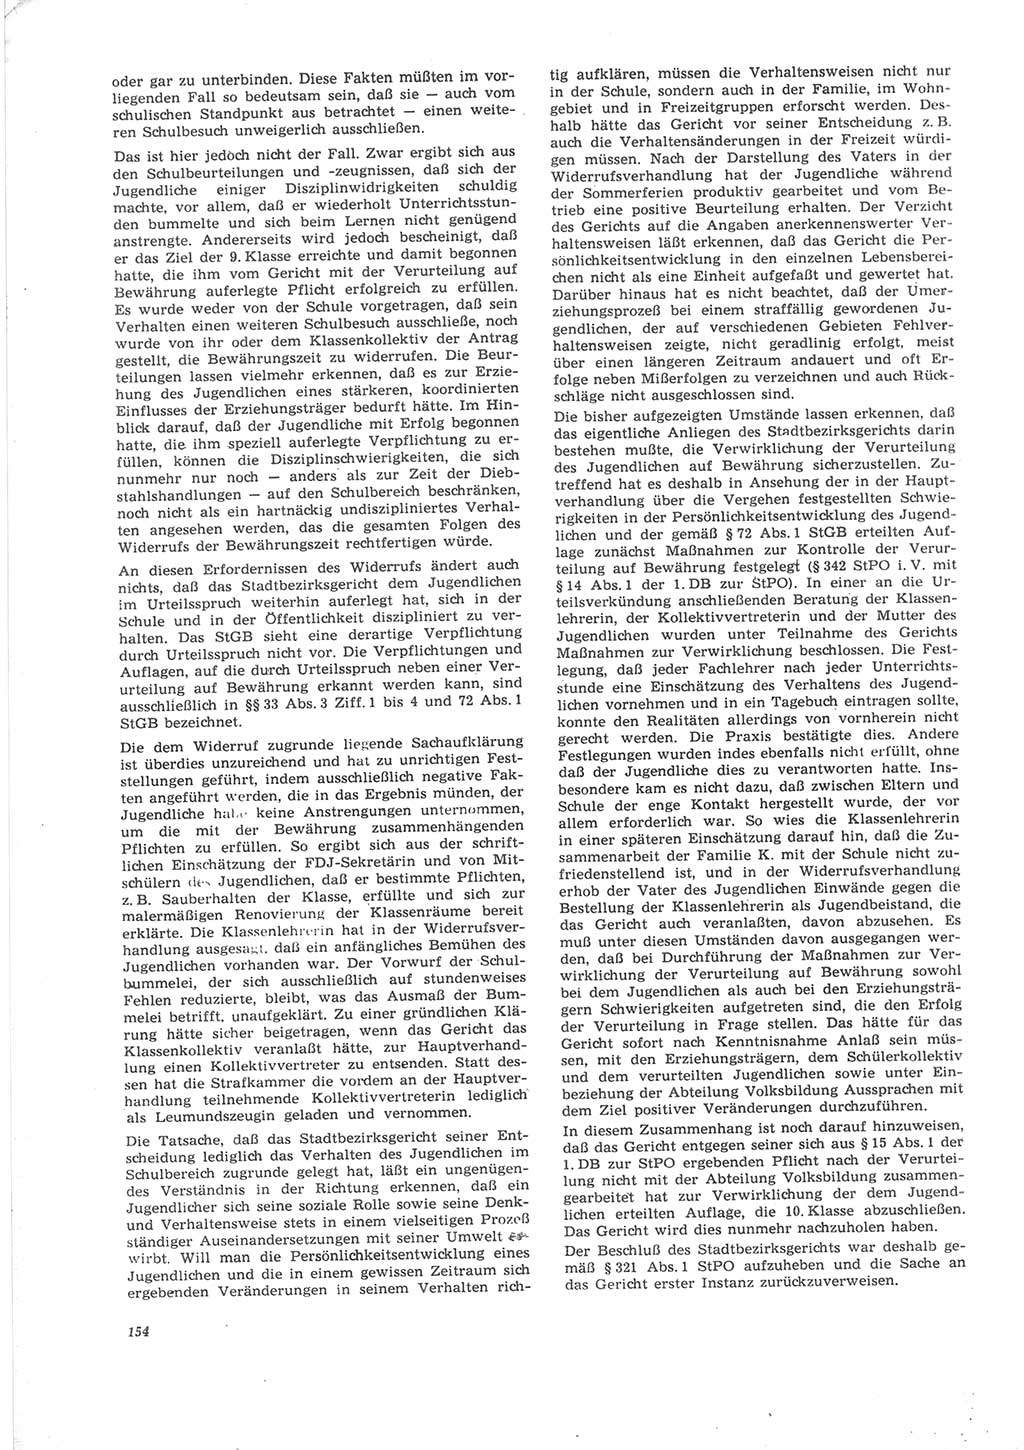 Neue Justiz (NJ), Zeitschrift für Recht und Rechtswissenschaft [Deutsche Demokratische Republik (DDR)], 24. Jahrgang 1970, Seite 154 (NJ DDR 1970, S. 154)